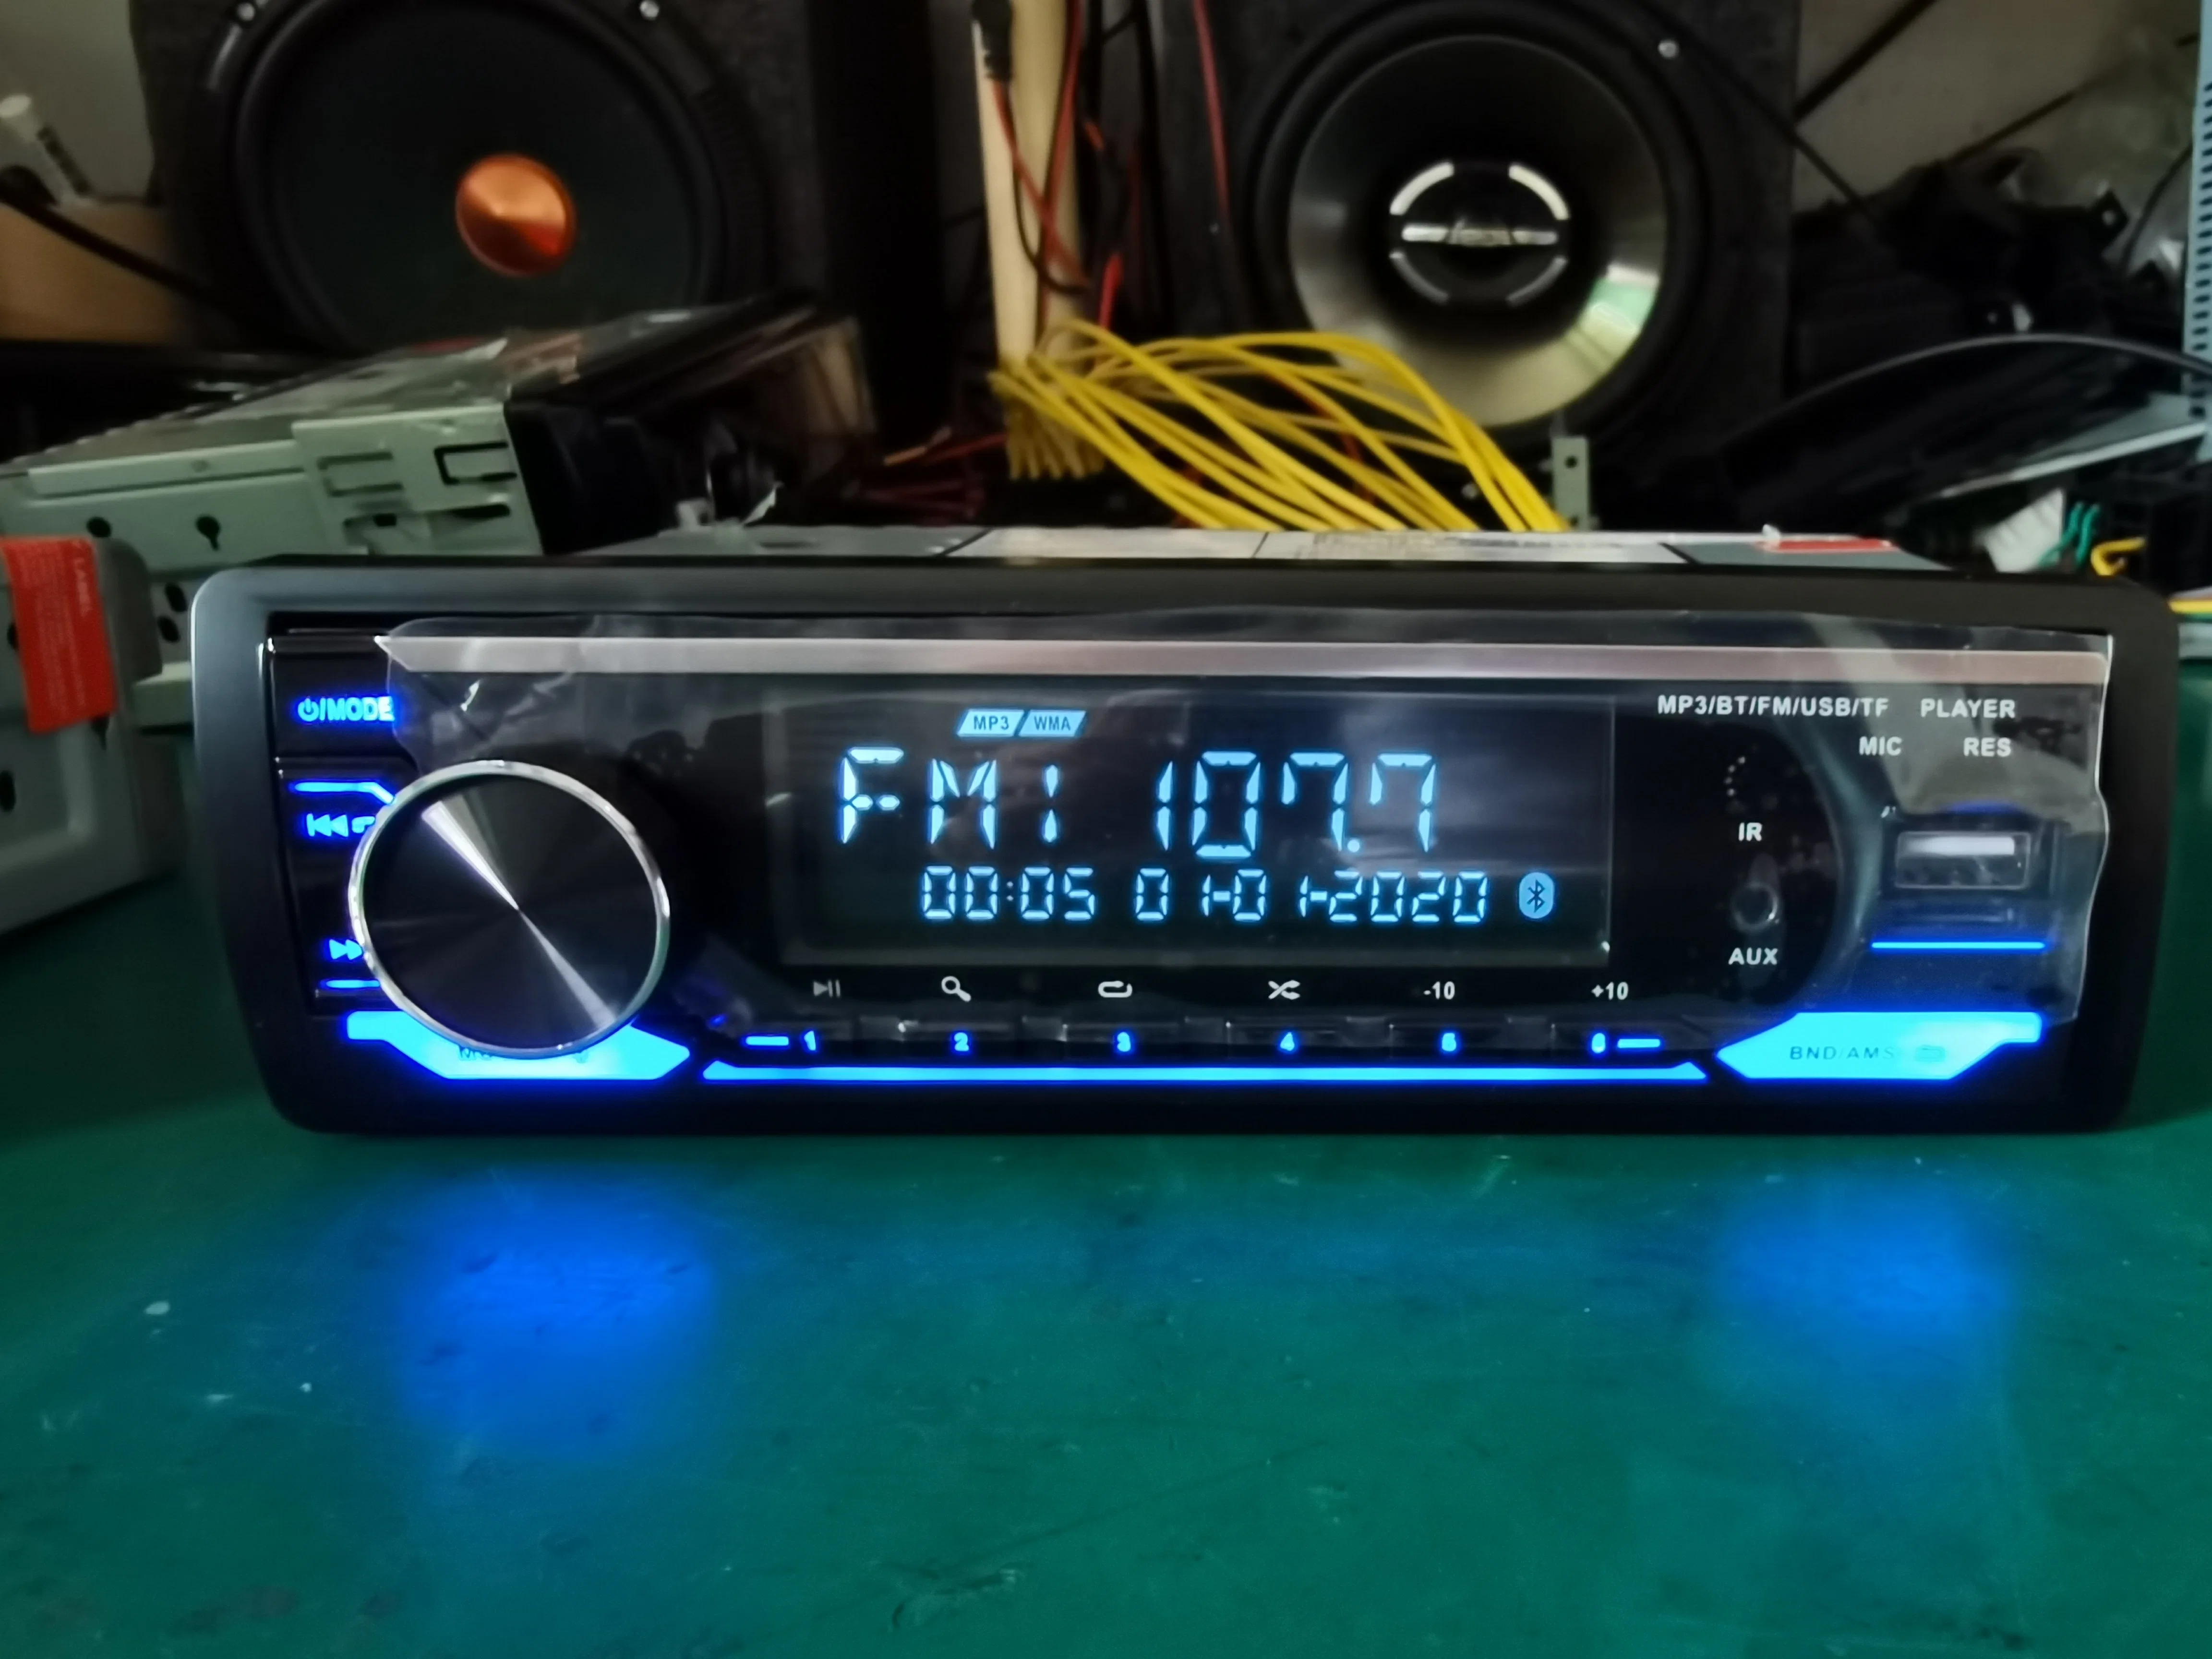 Nouveau modèle de lecteur audio MP3 pour voiture avec Bluetooth, Aux, USB, FM.